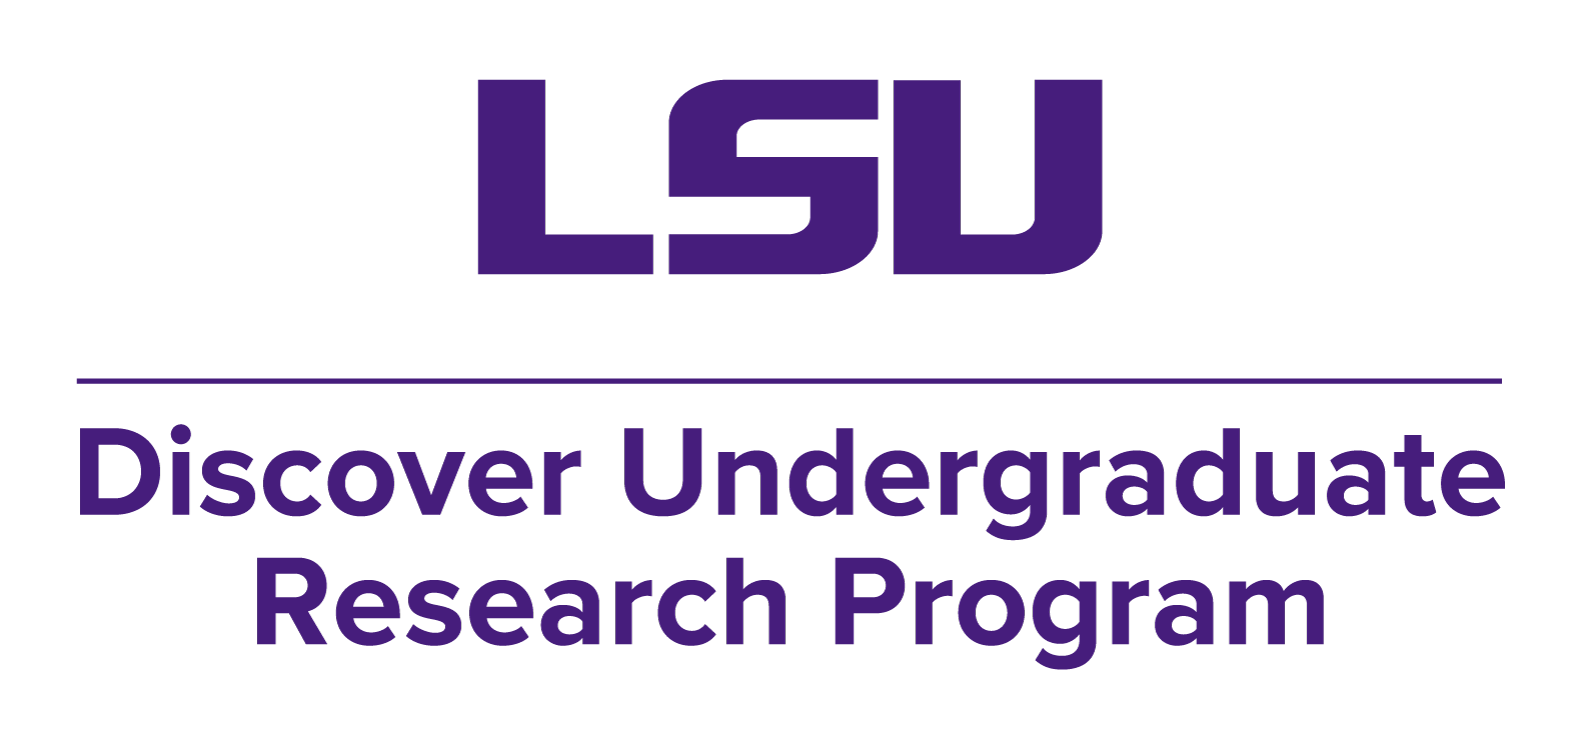 LSU over purple line Discover Undergraduate Research Program